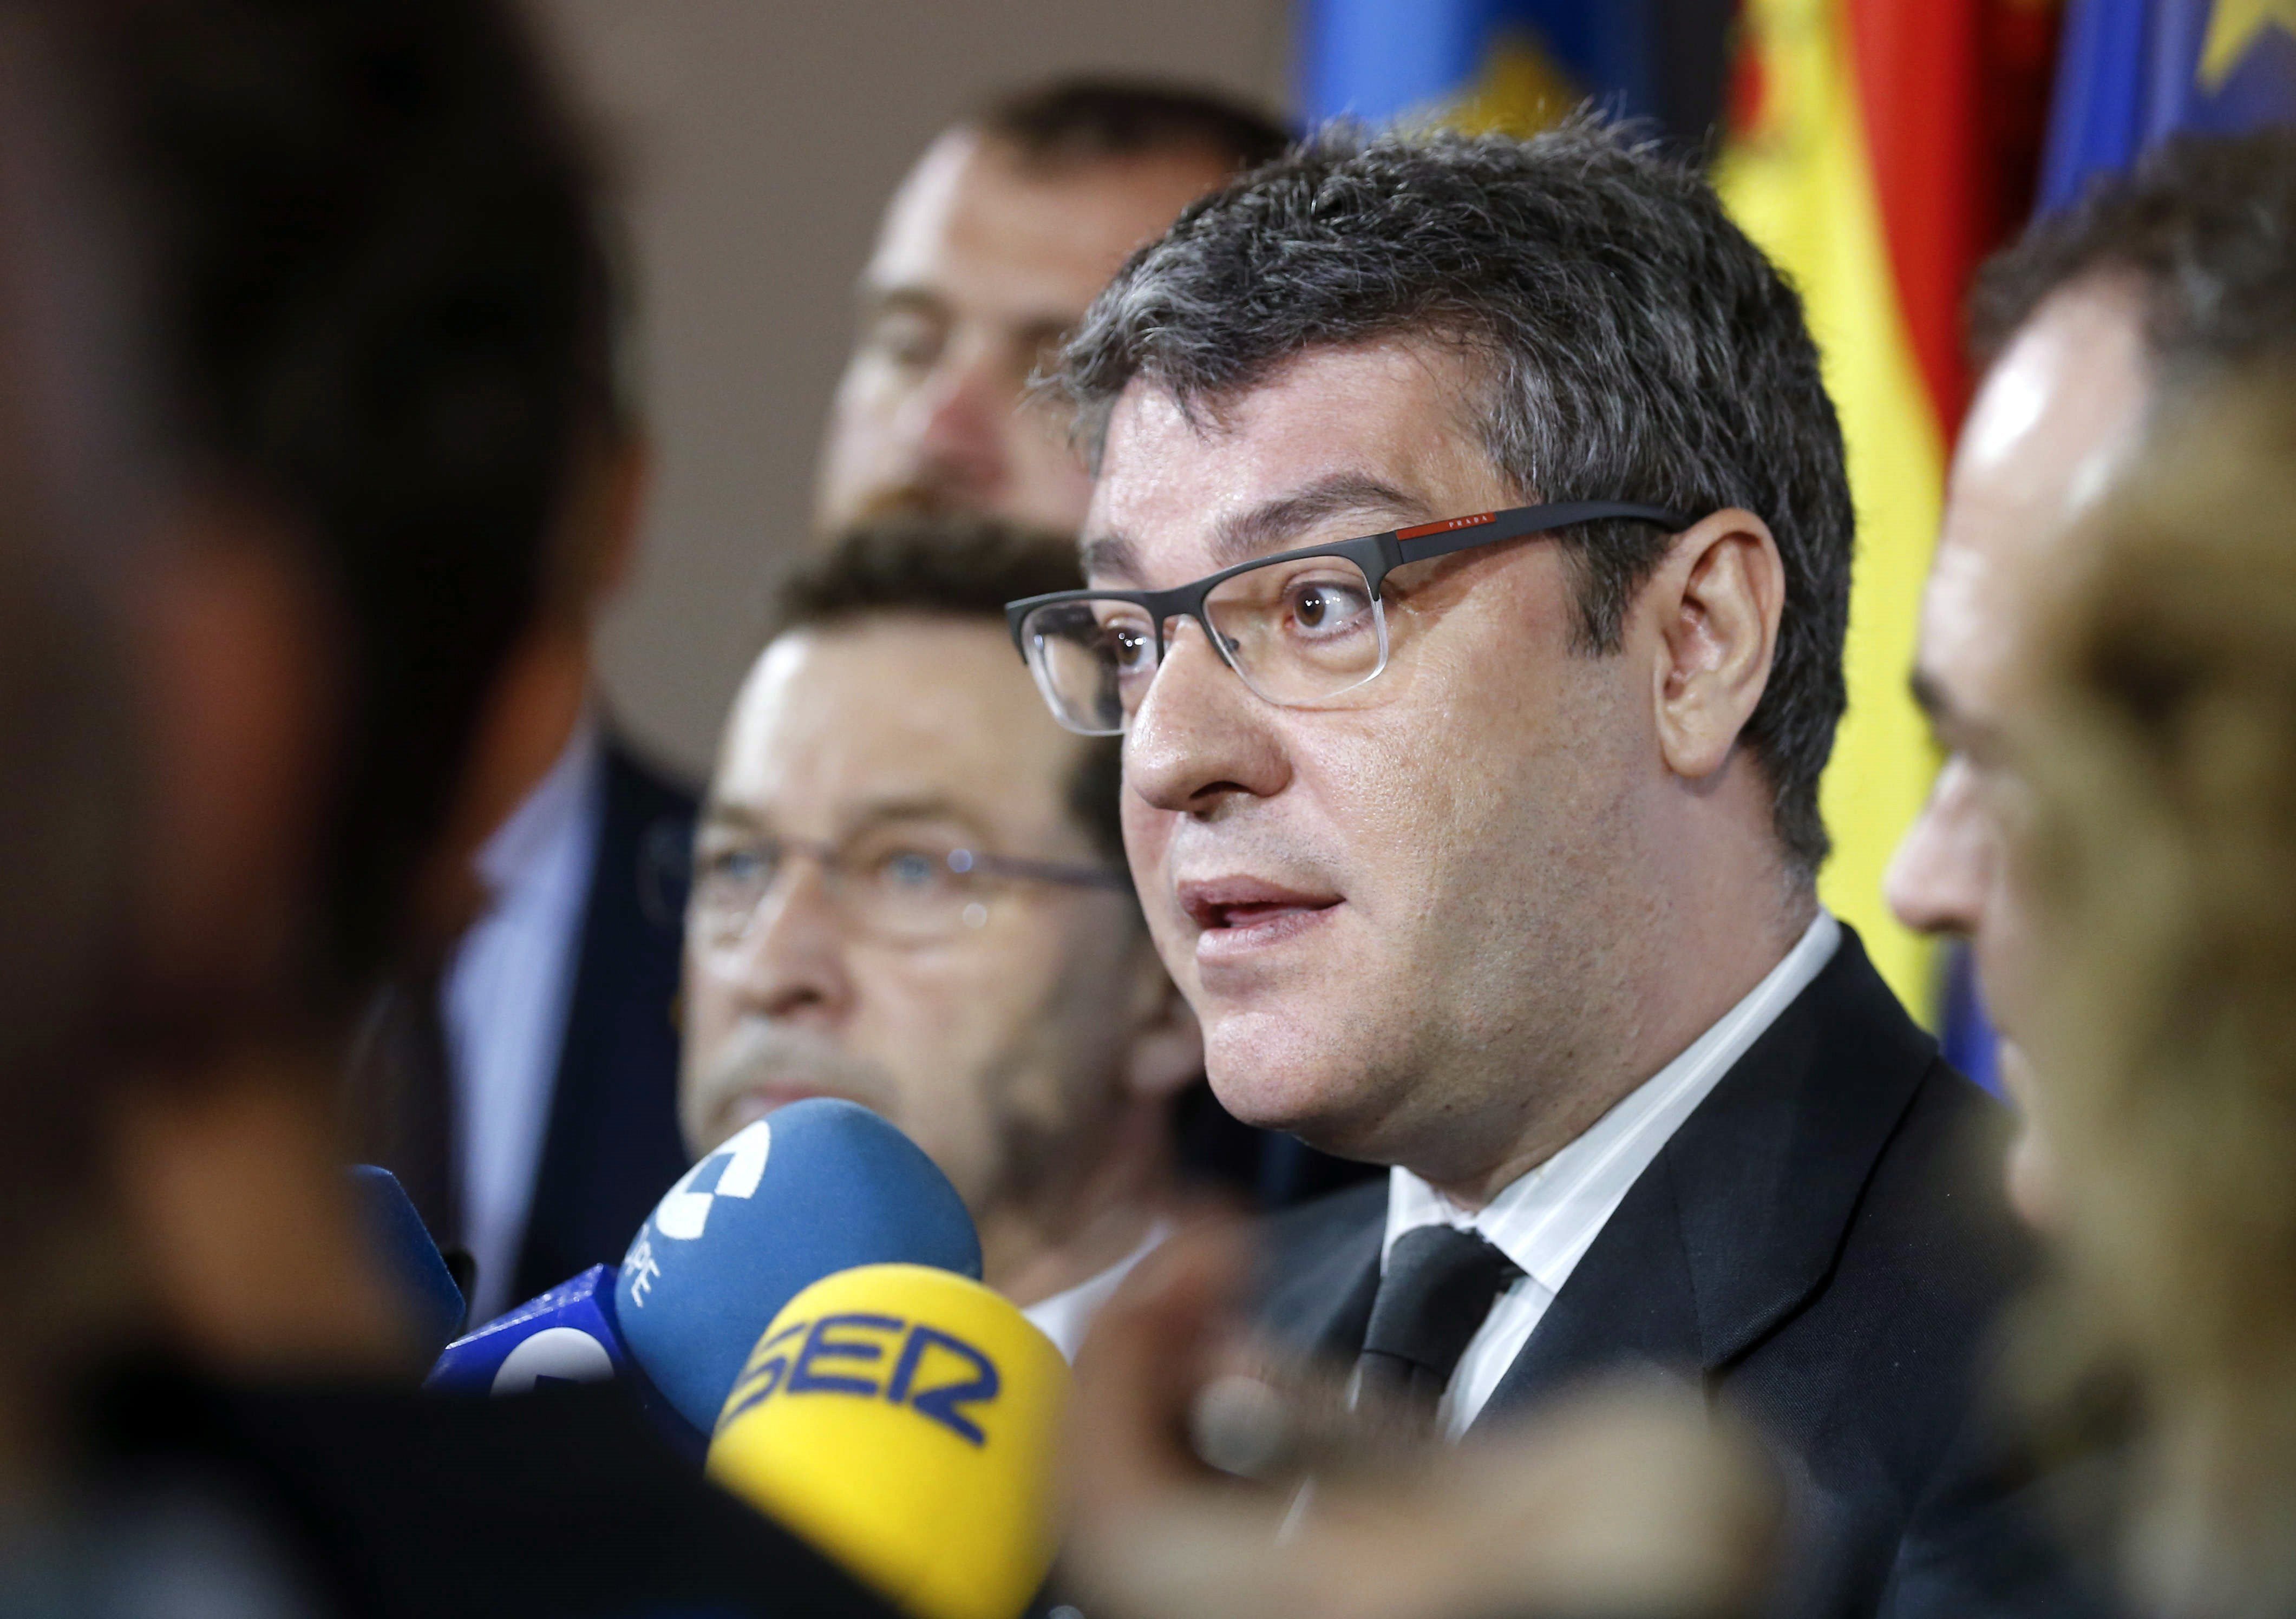 El govern del PP vol fer un rentat de cara a Catalunya després de l'1-O